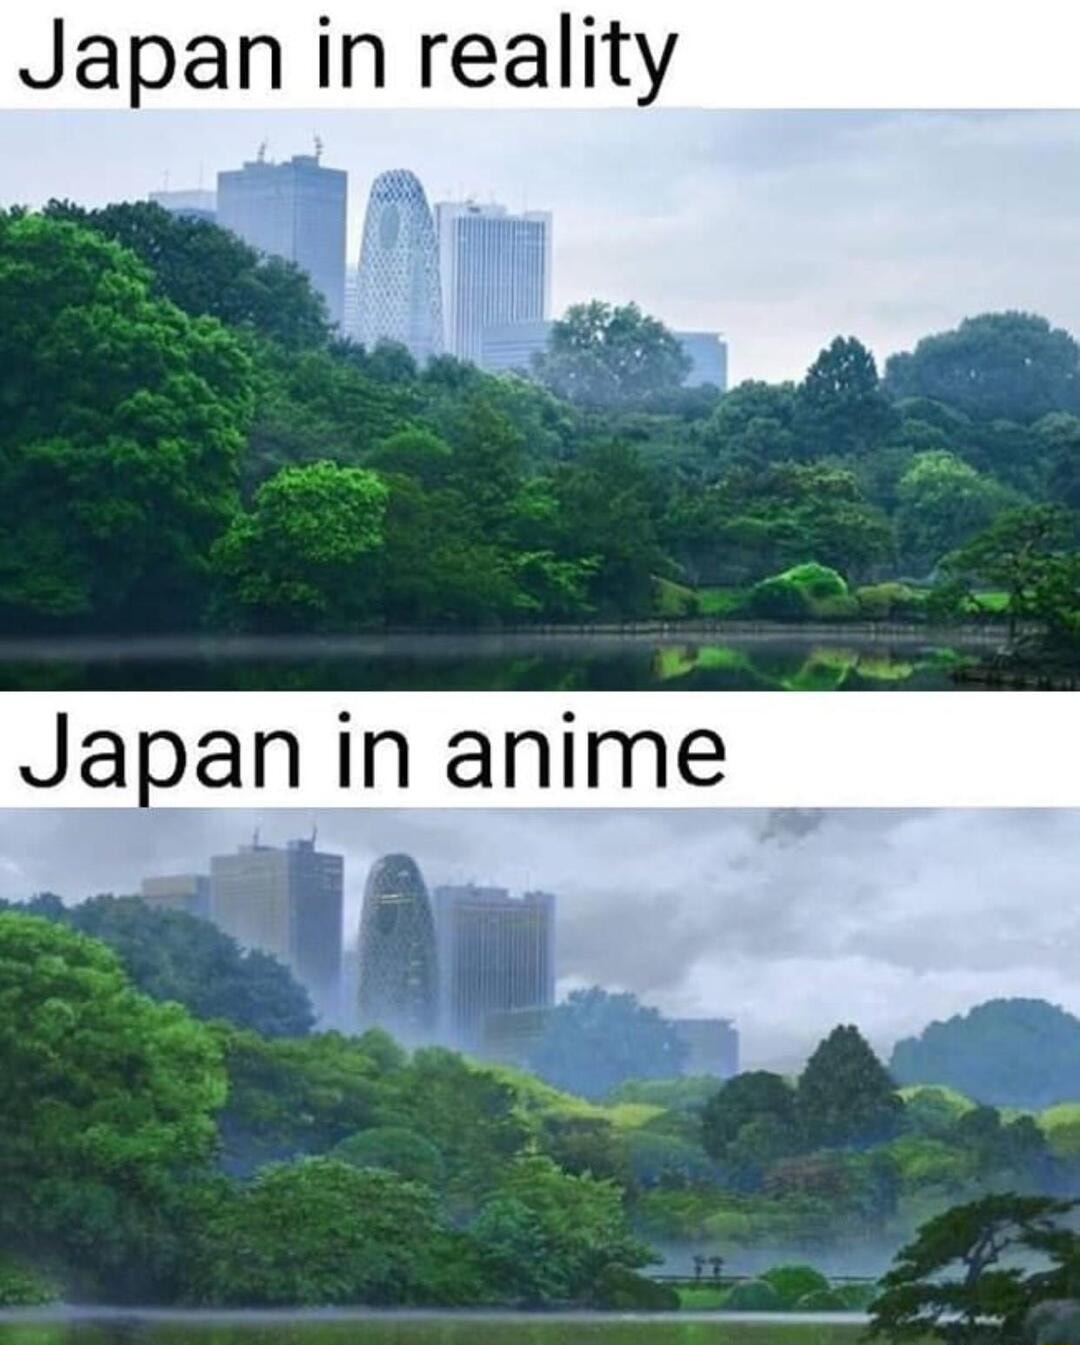 Japan - meme